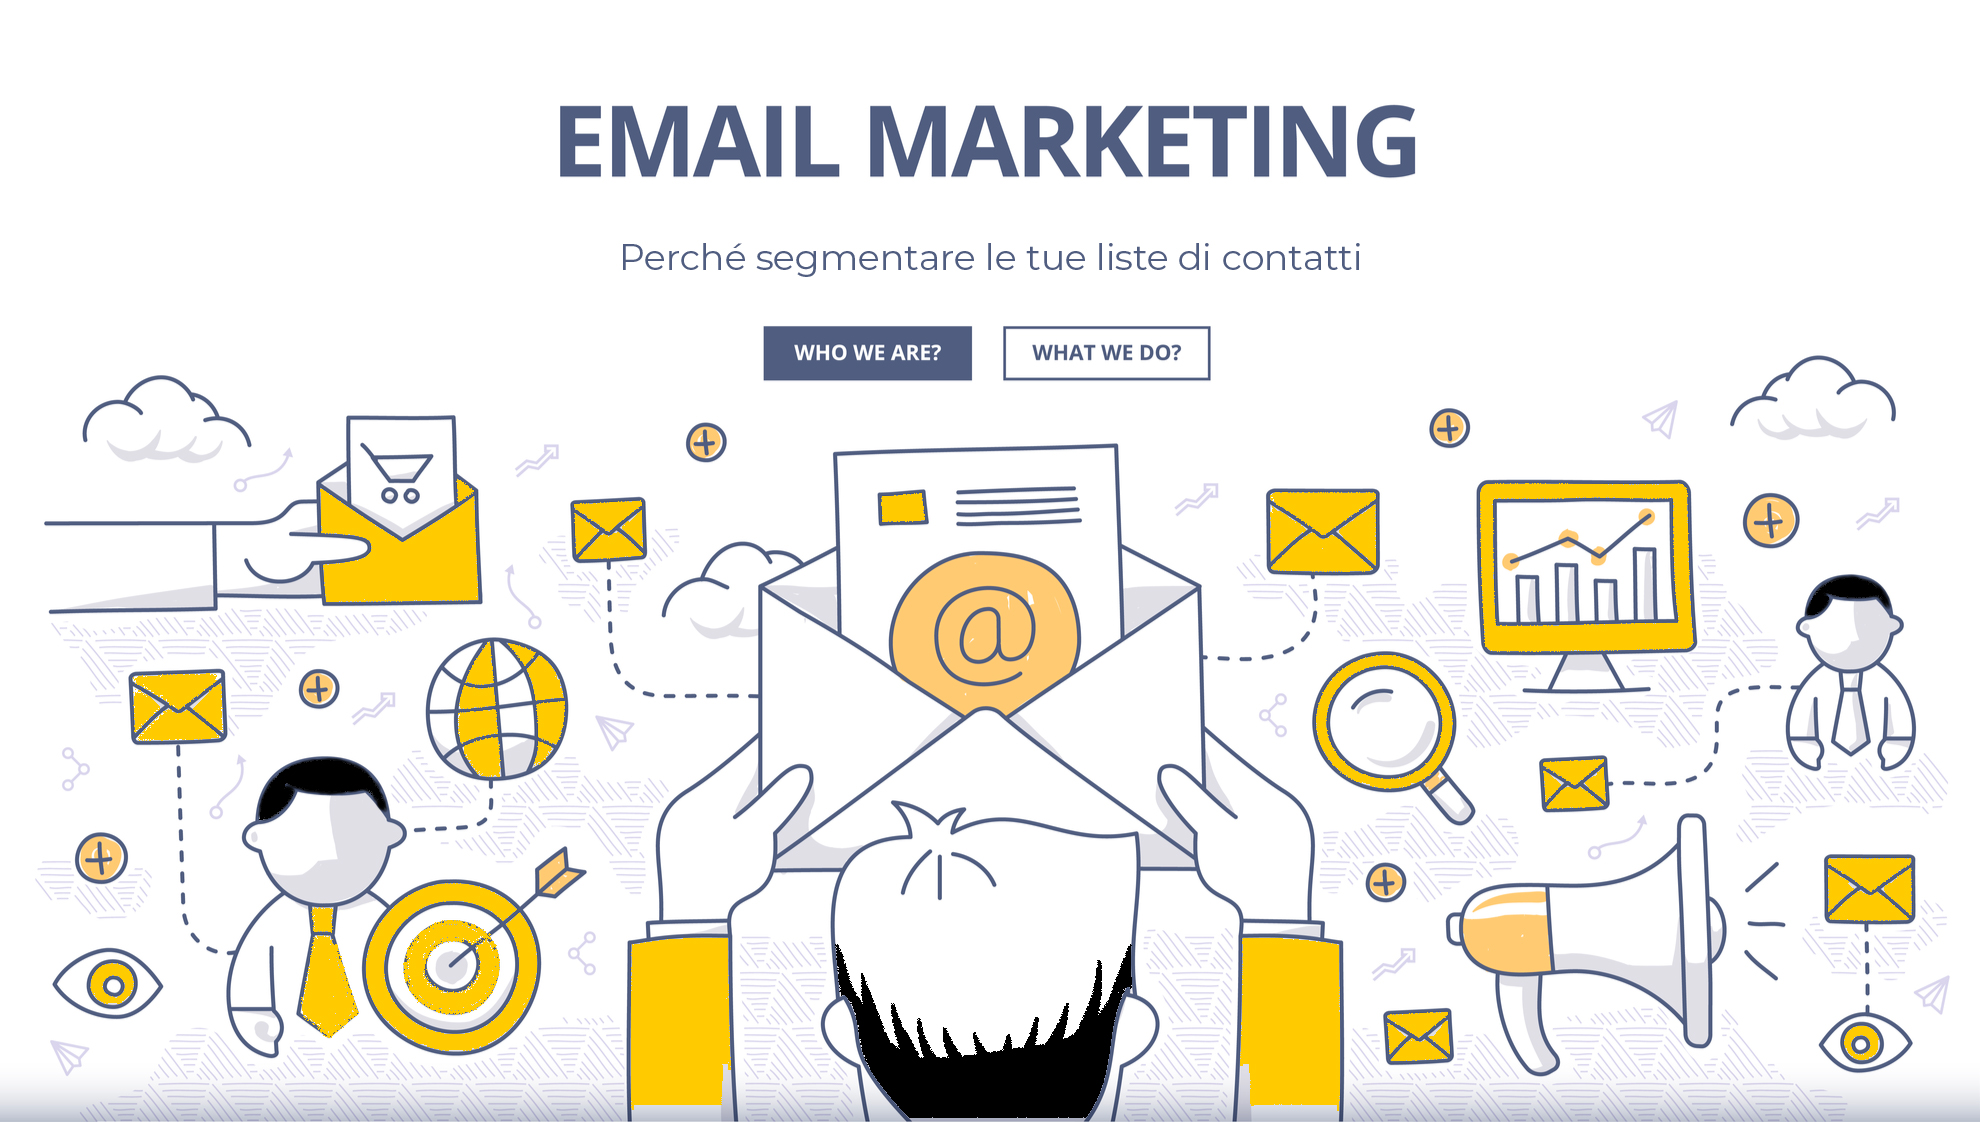 email marketing - perché segmentare le liste